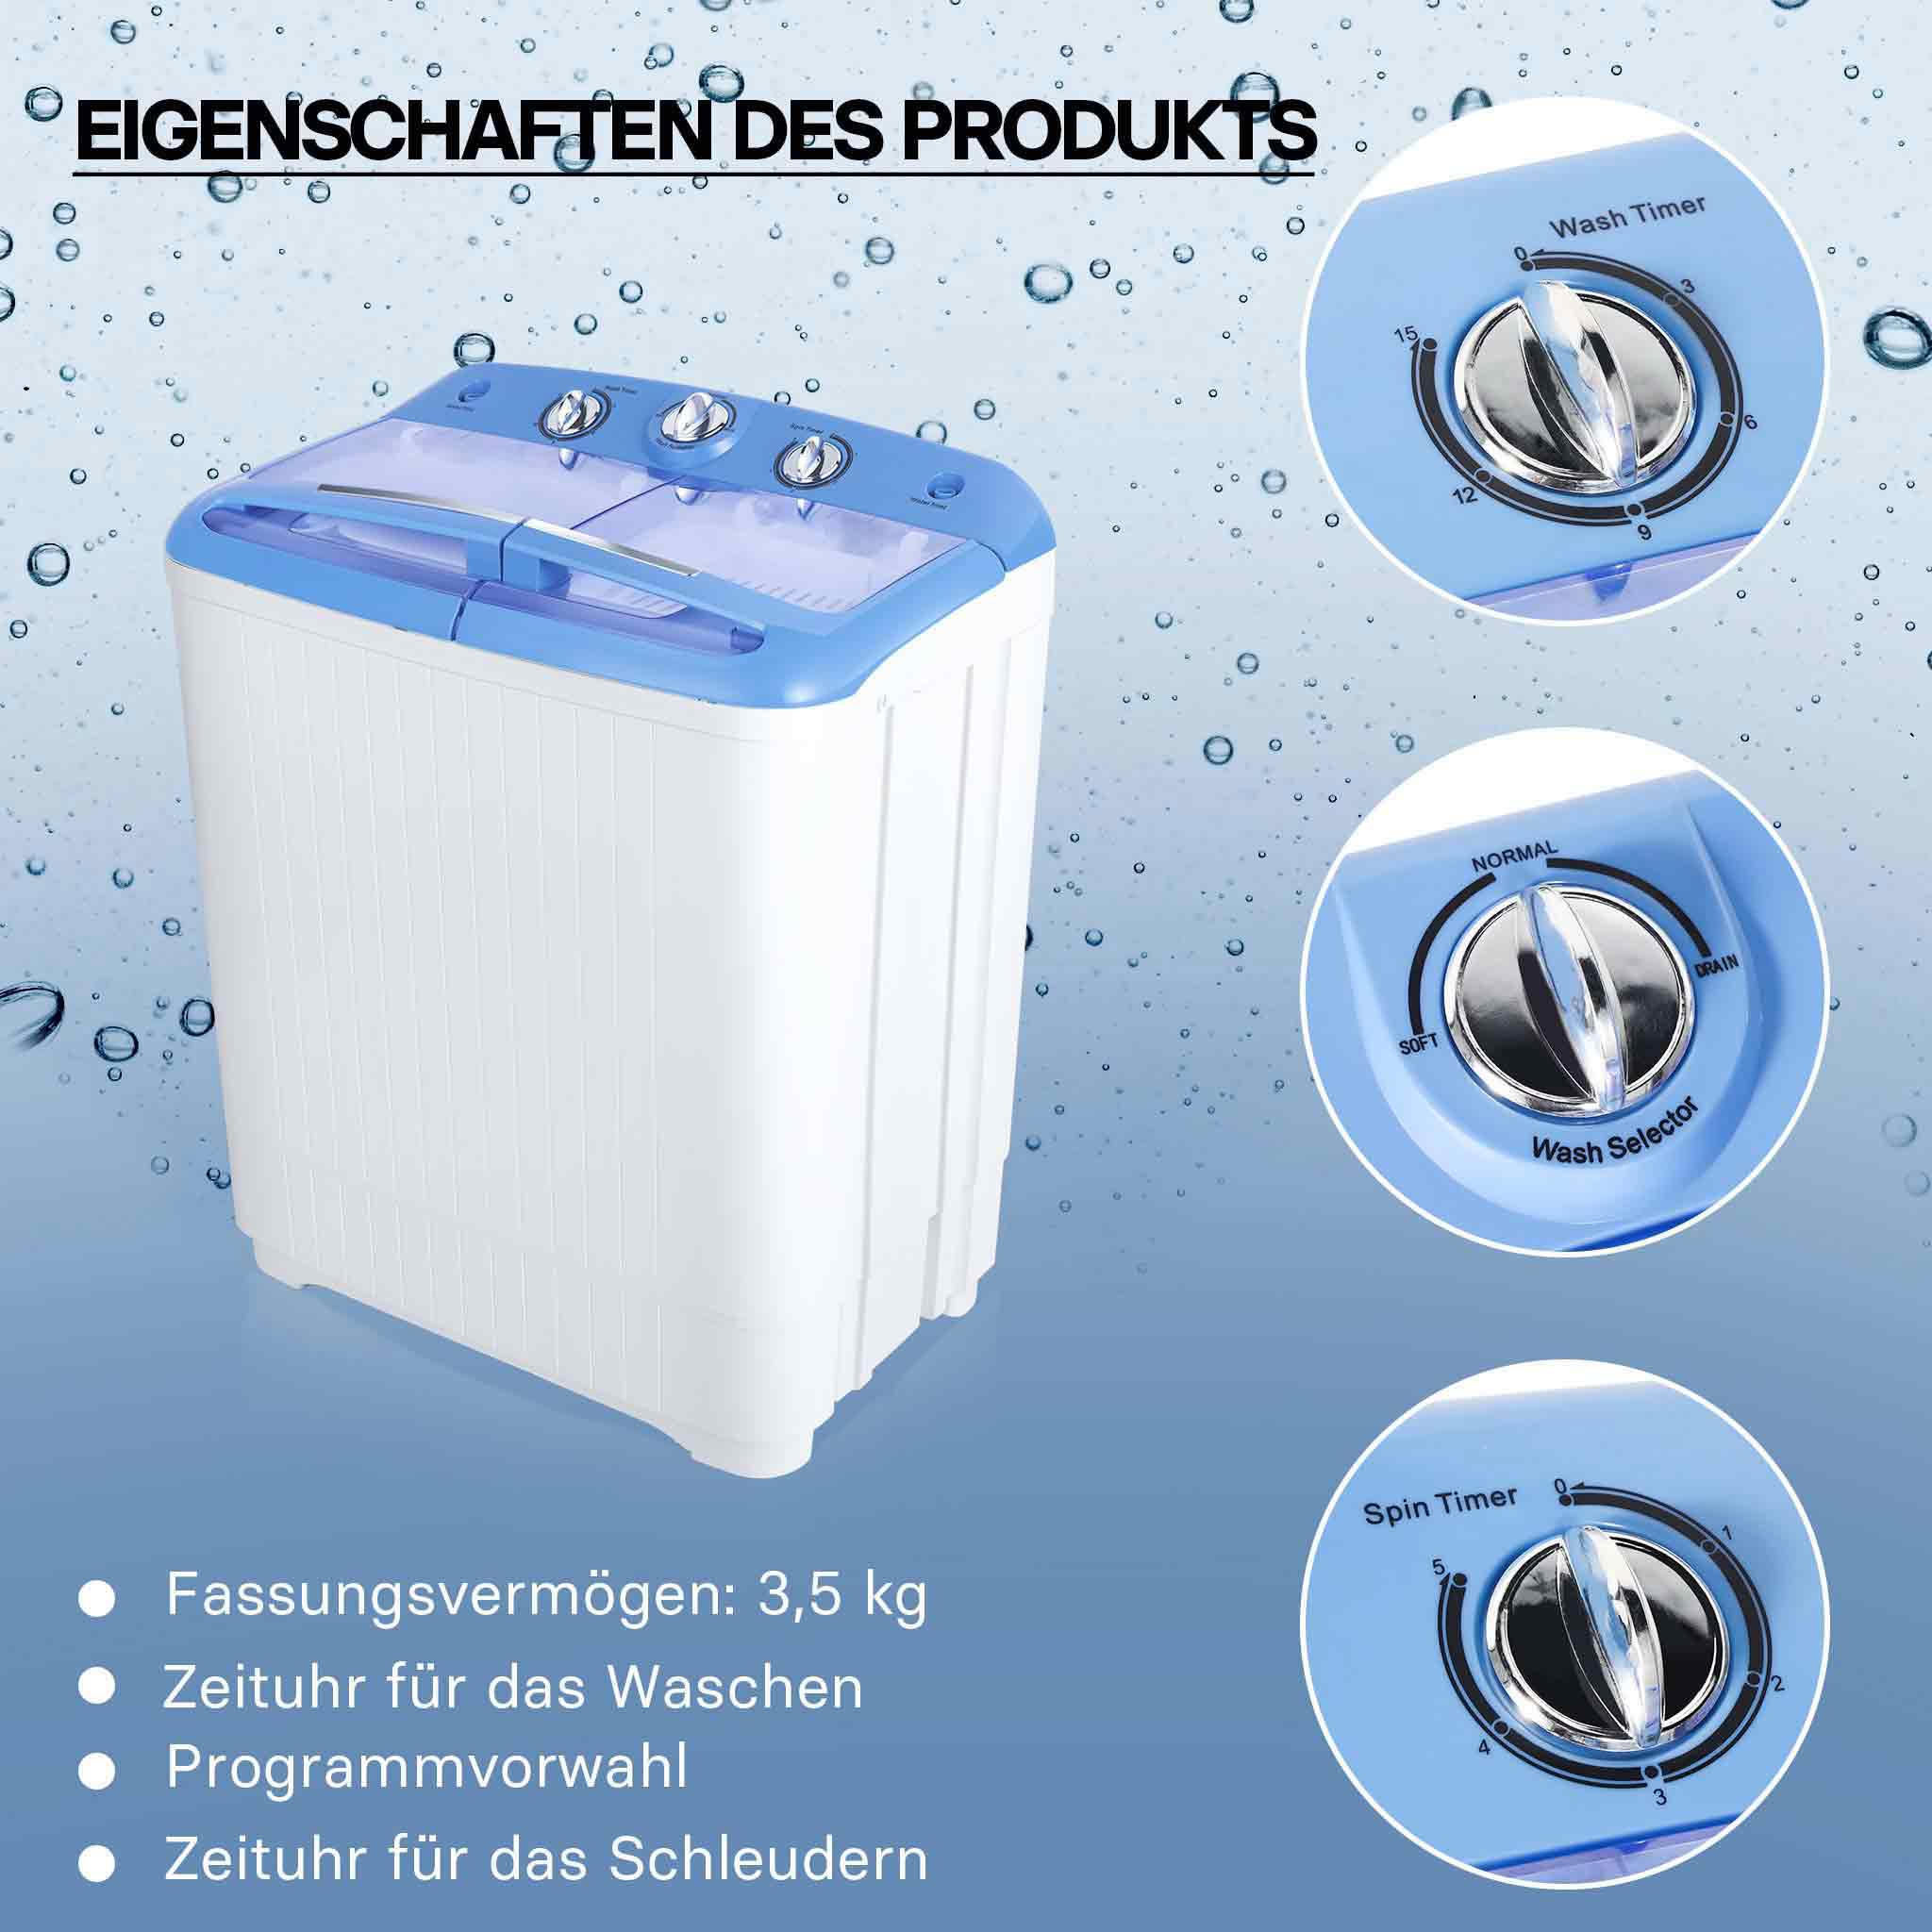 Mini-lave-linge portable de 2 à 3 kg avec panier pour sèche-linge